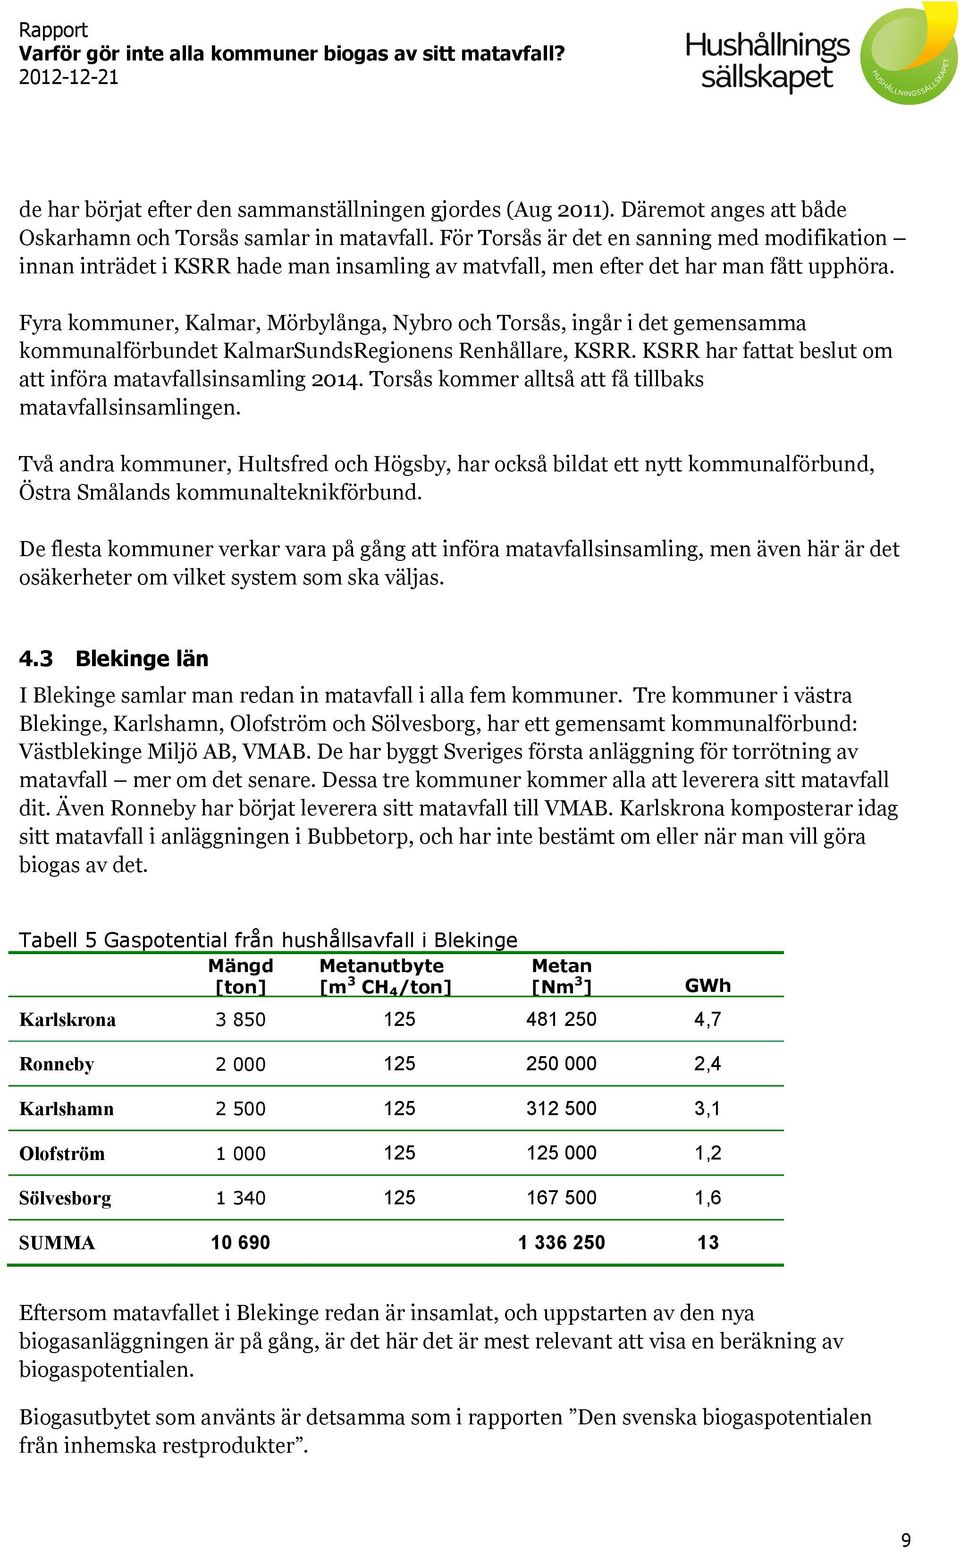 Fyra kommuner, Kalmar, Mörbylånga, Nybro och Torsås, ingår i det gemensamma kommunalförbundet KalmarSundsRegionens Renhållare, KSRR. KSRR har fattat beslut om att införa matavfallsinsamling 2014.